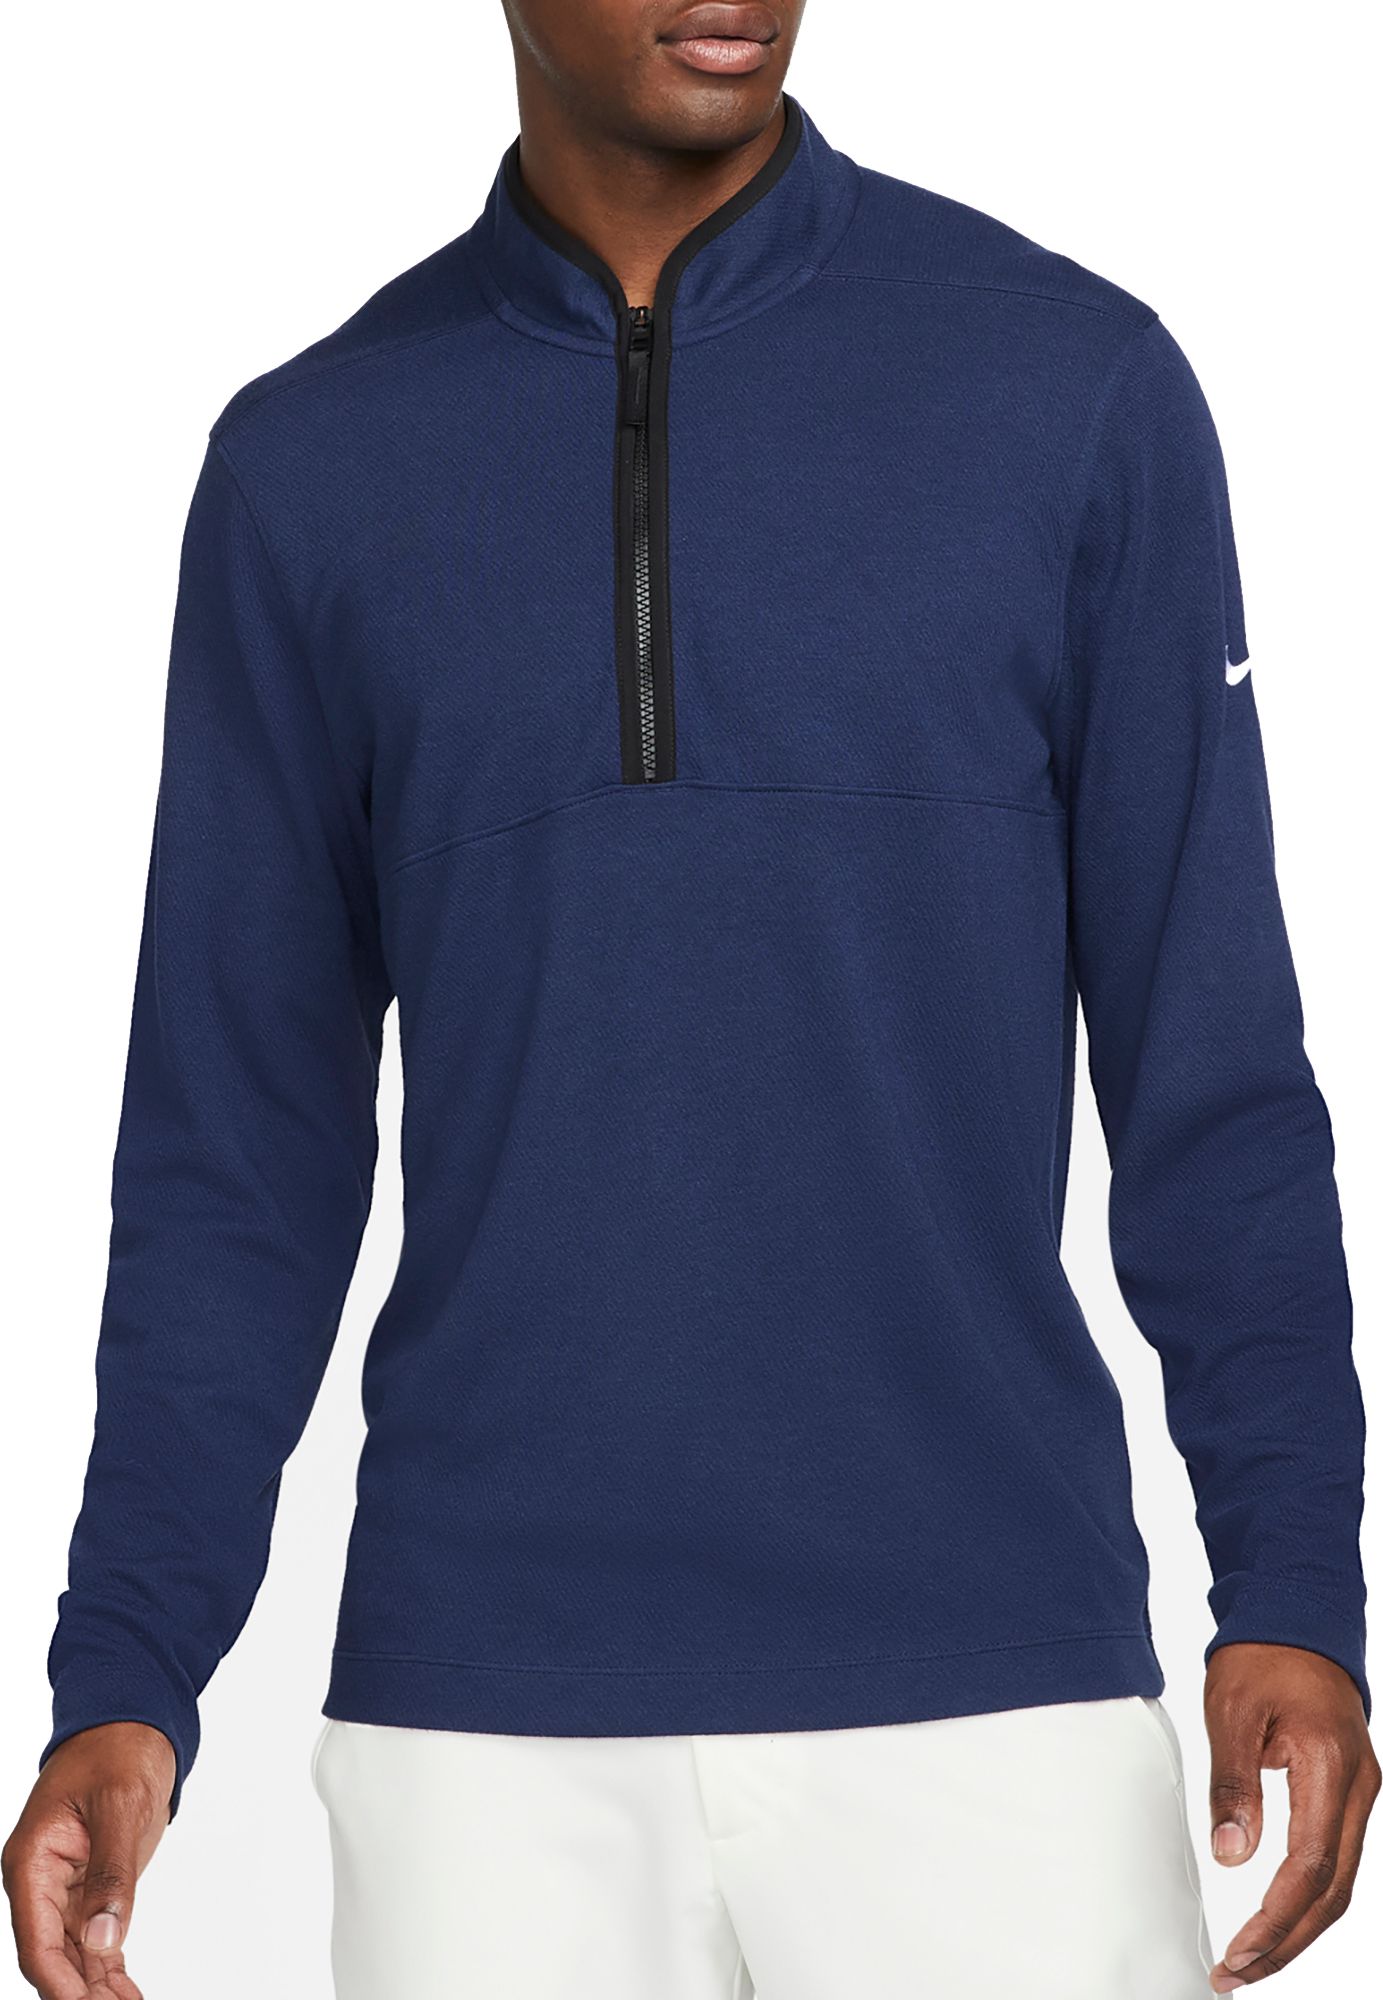 Nike Golf Jackets & Vests